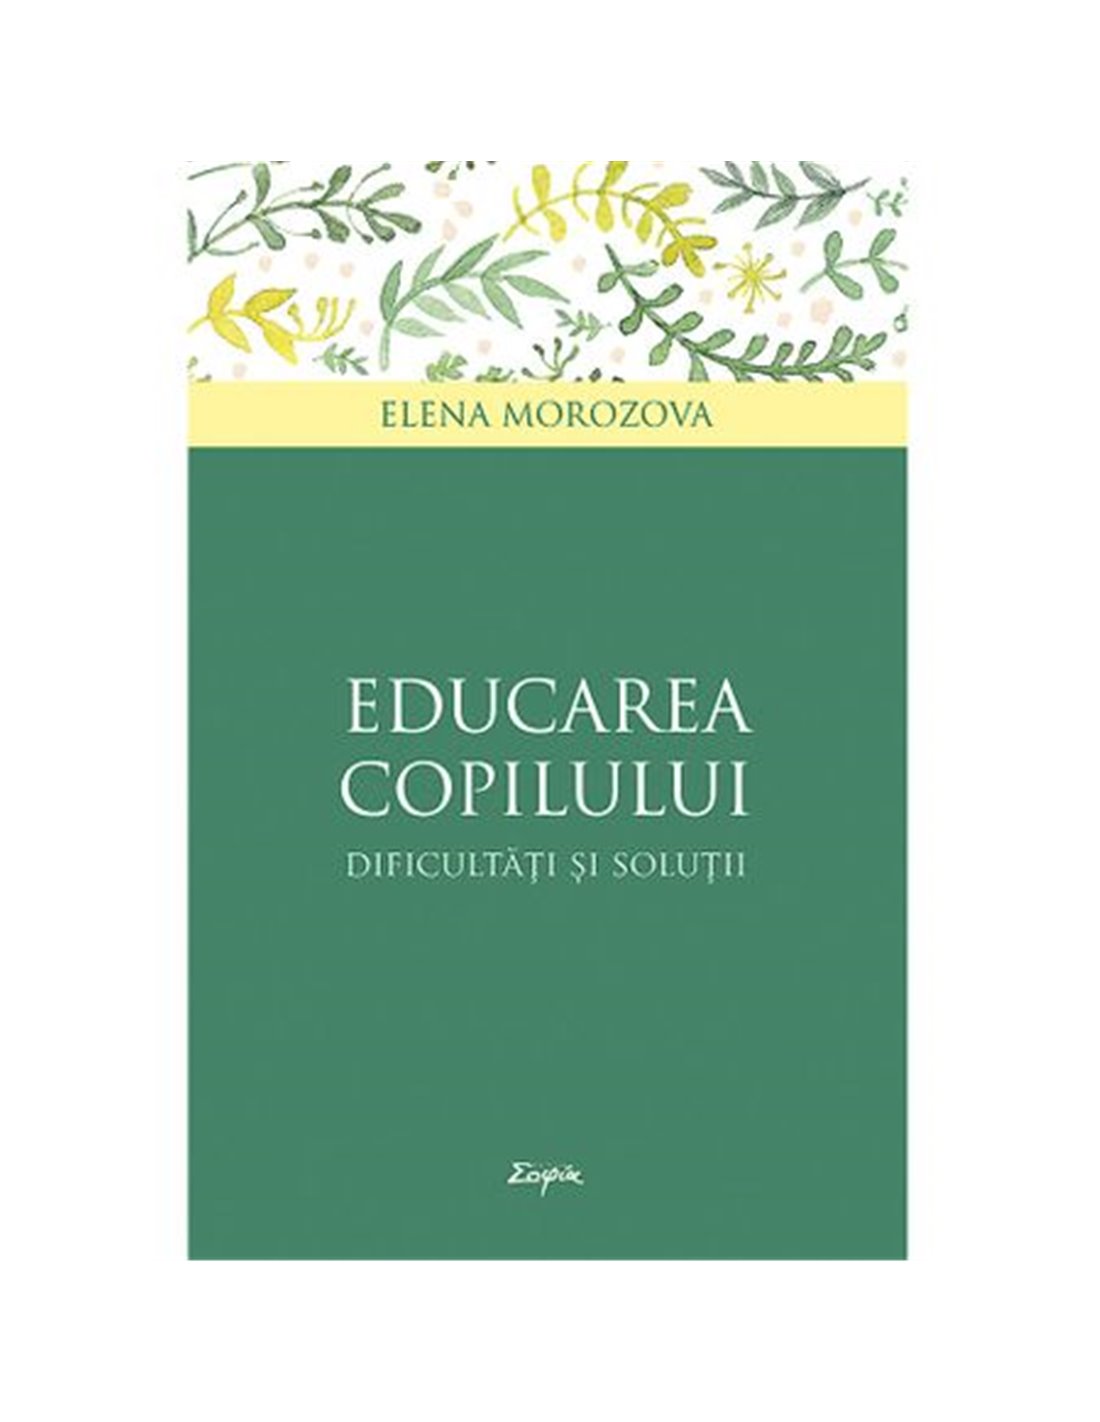 Educarea copilului - Elena Morozova | Editura Sophia